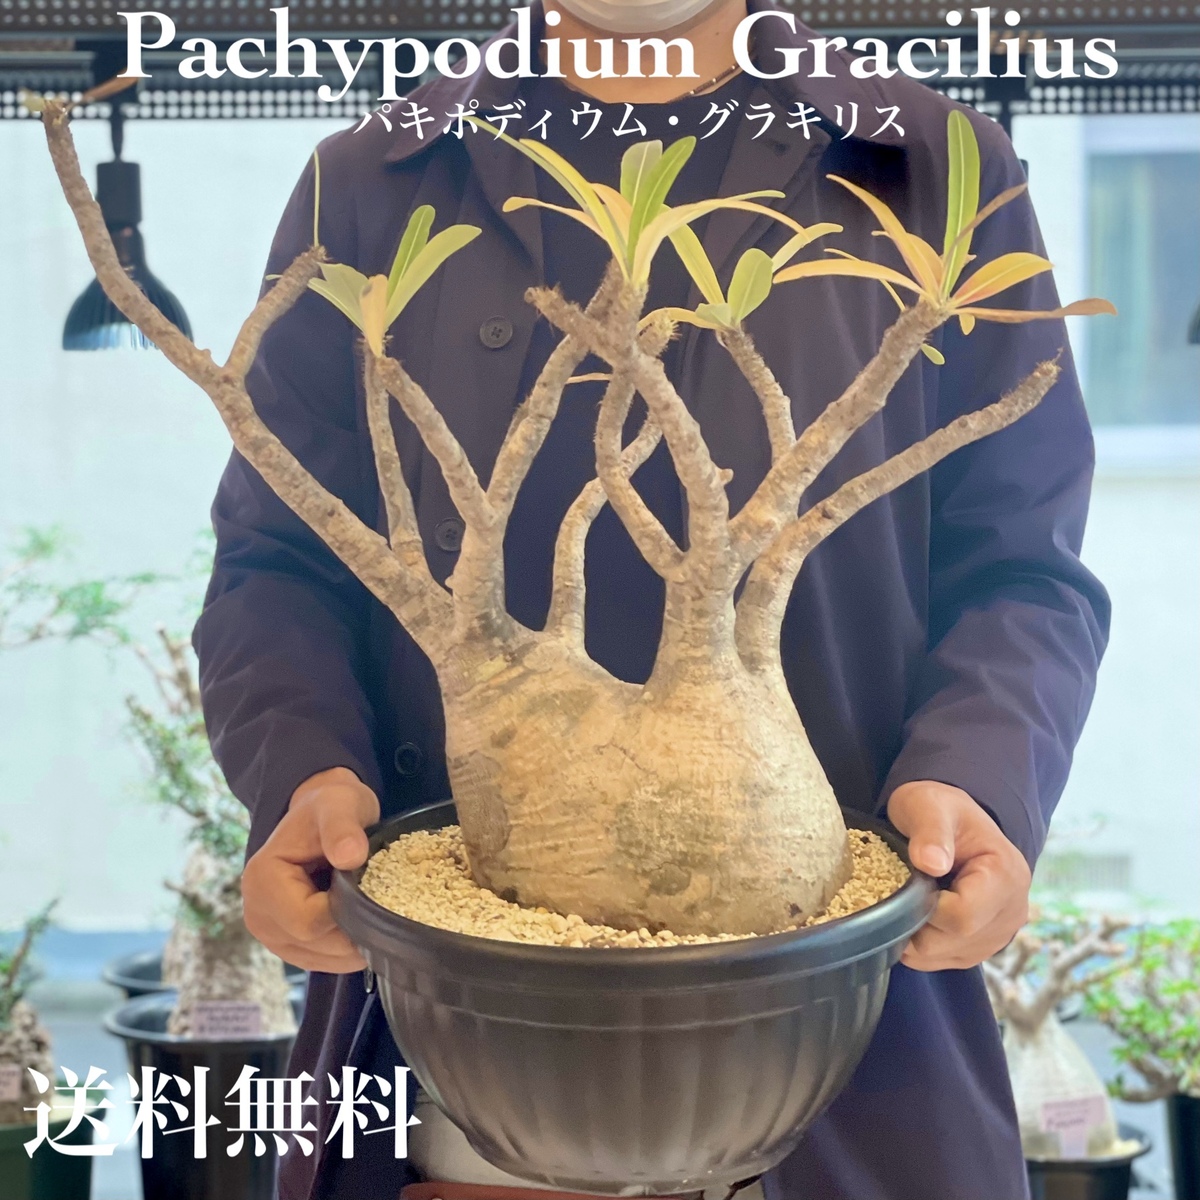 発根済み パキポディウム グラキリス 塊根植物-